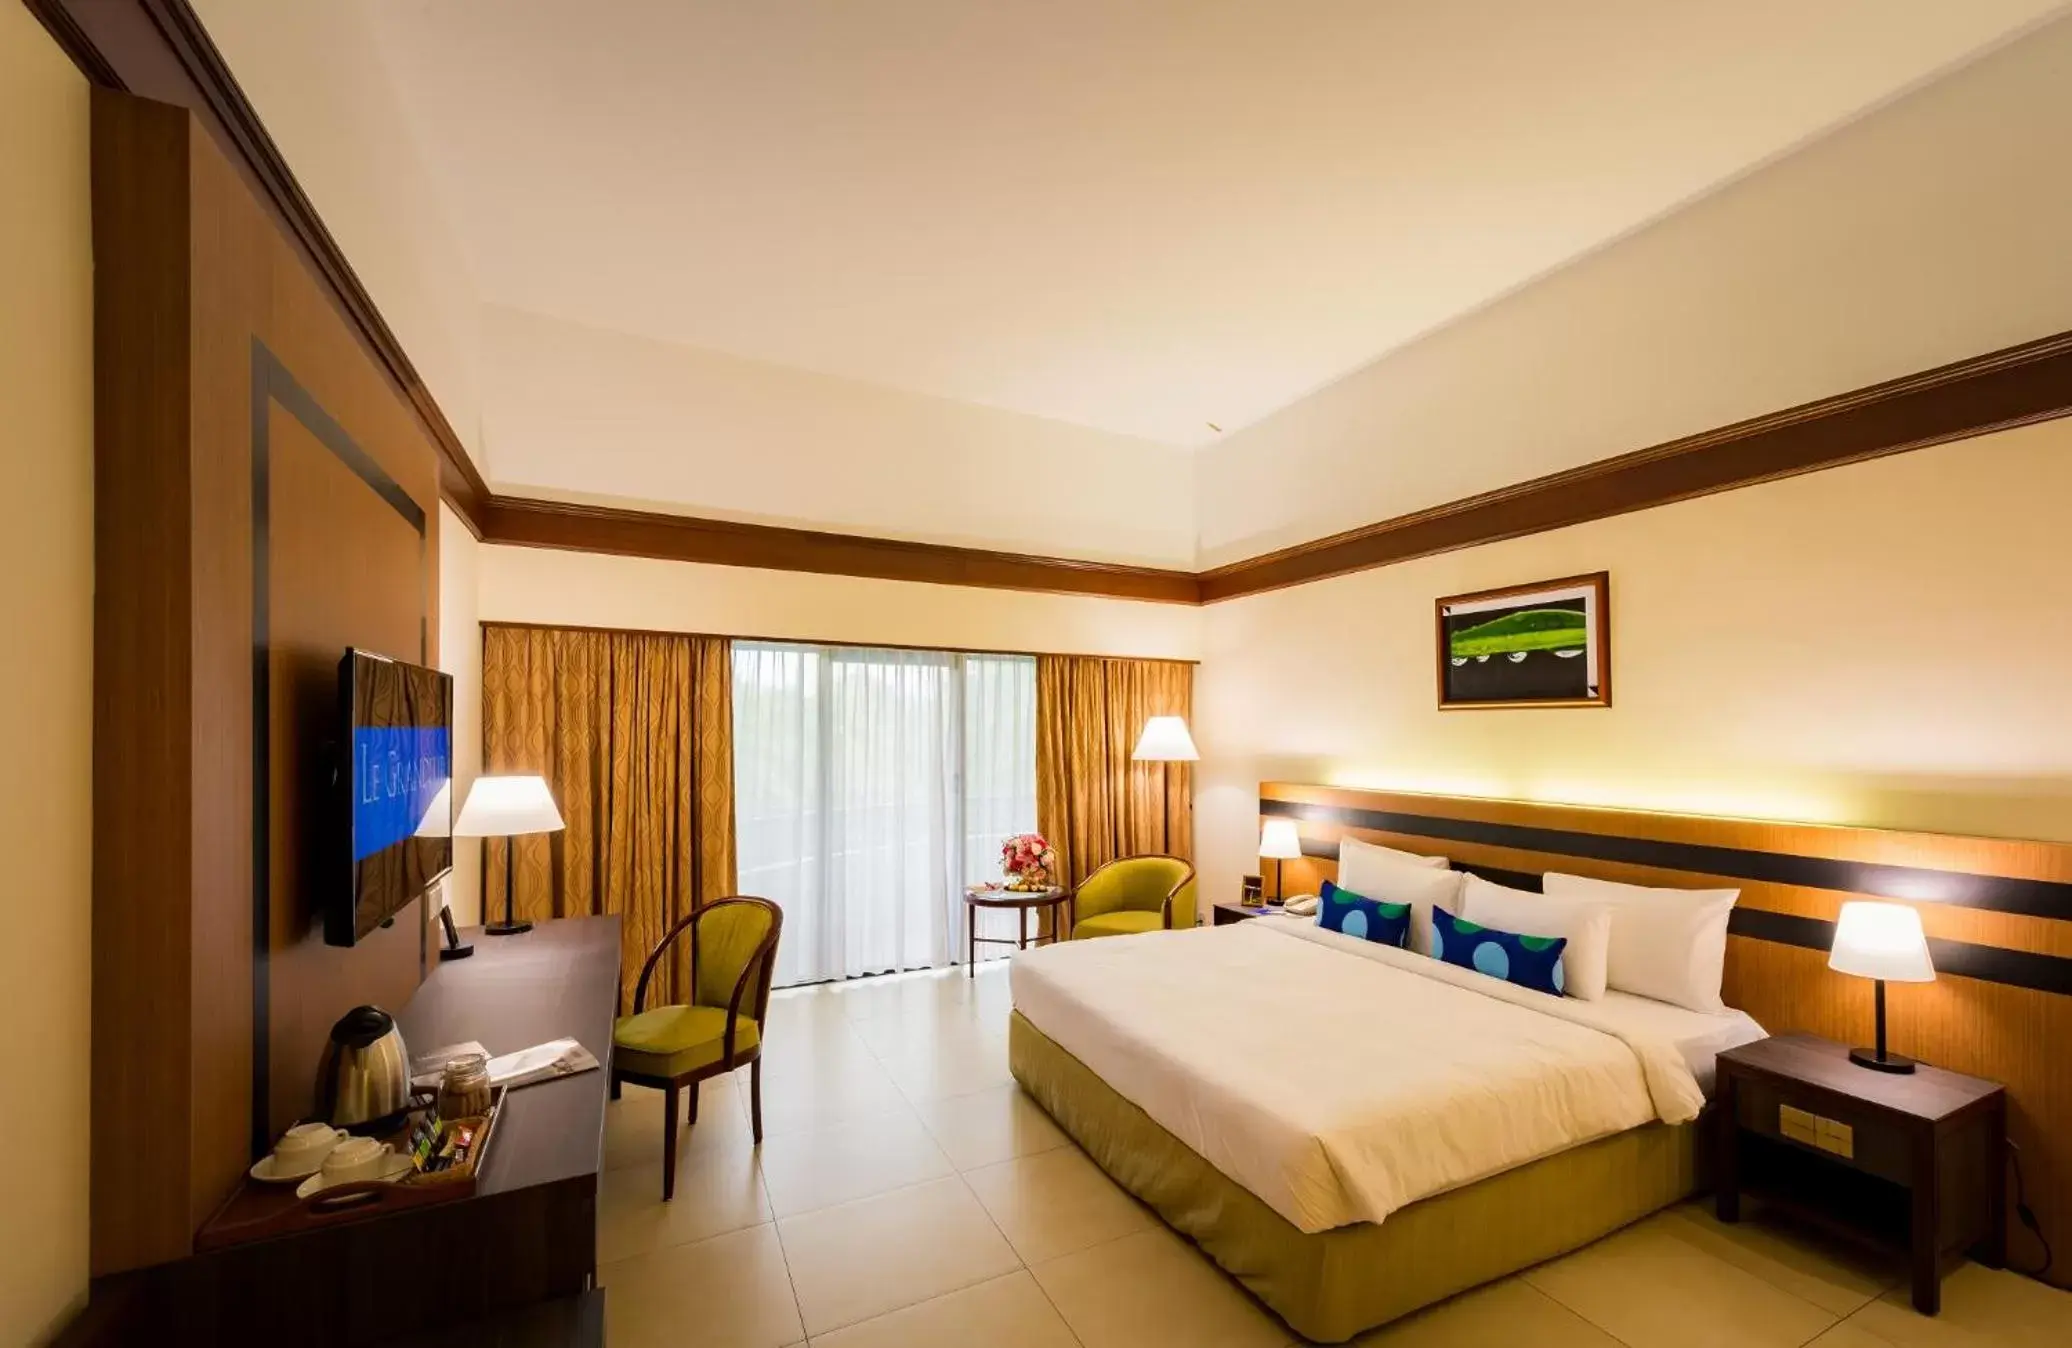 Bed in Le Grandeur Palm Resort Johor